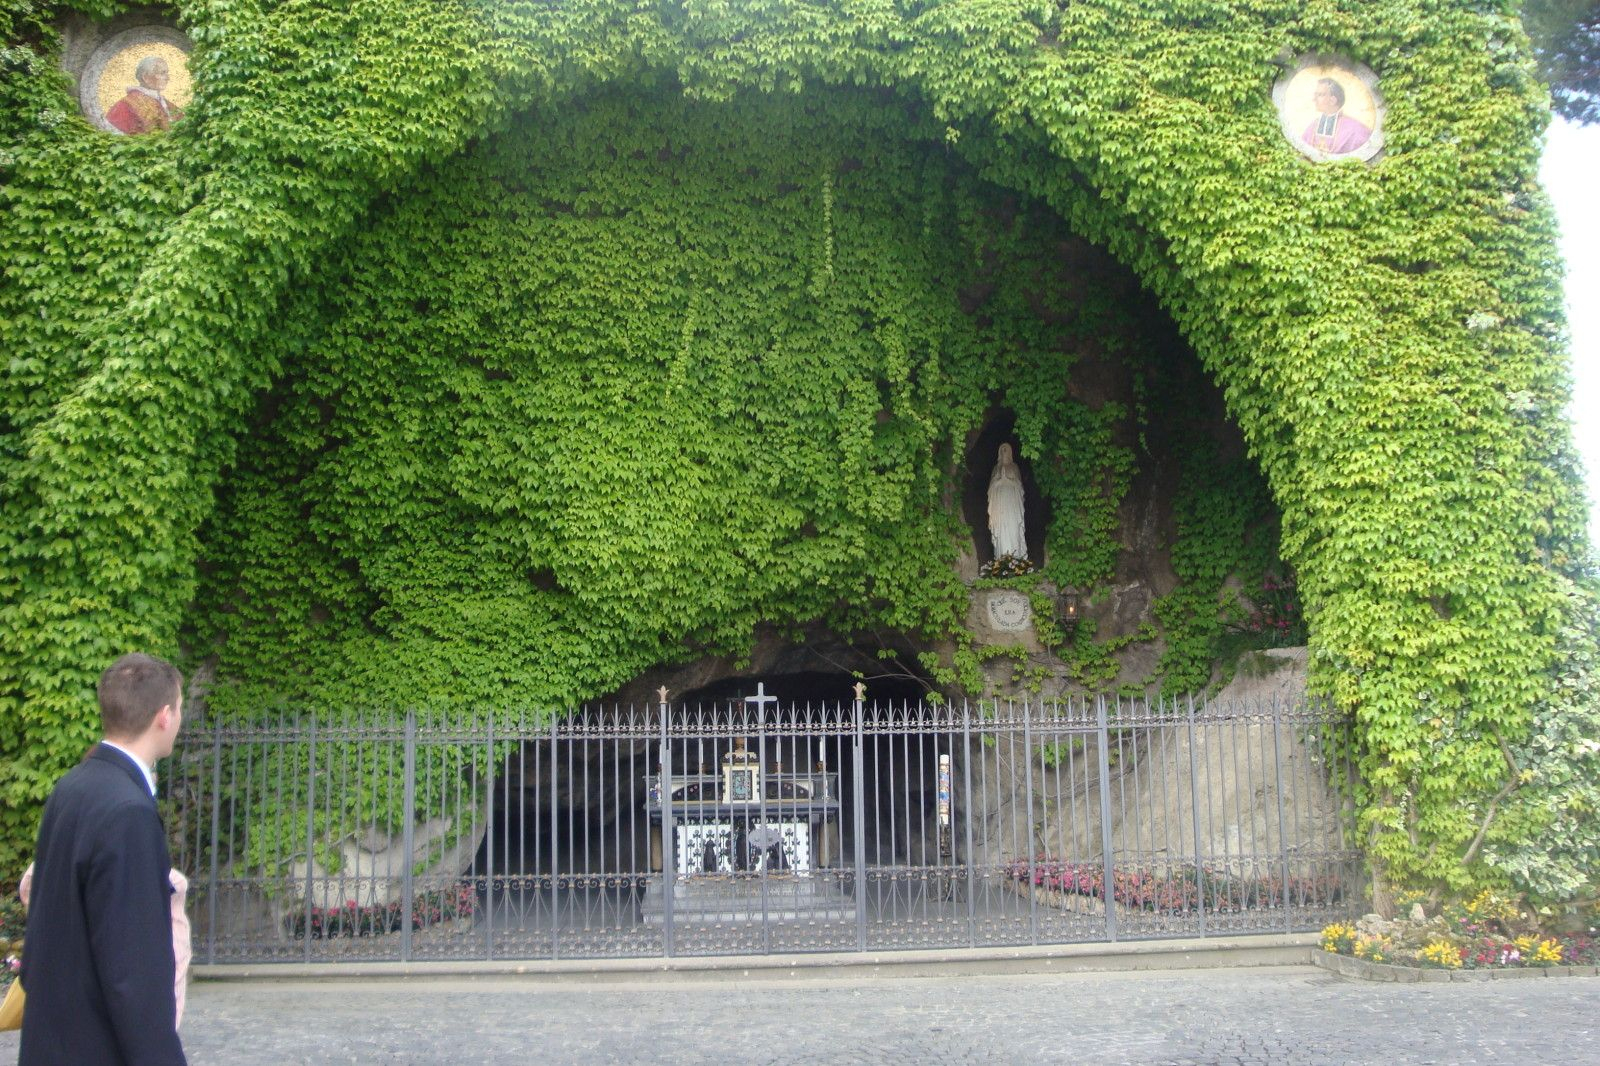 La Grotte De Lourdes Dans Les Jardins Du Vatican | European ... intérieur Les Jardins De Lourdes